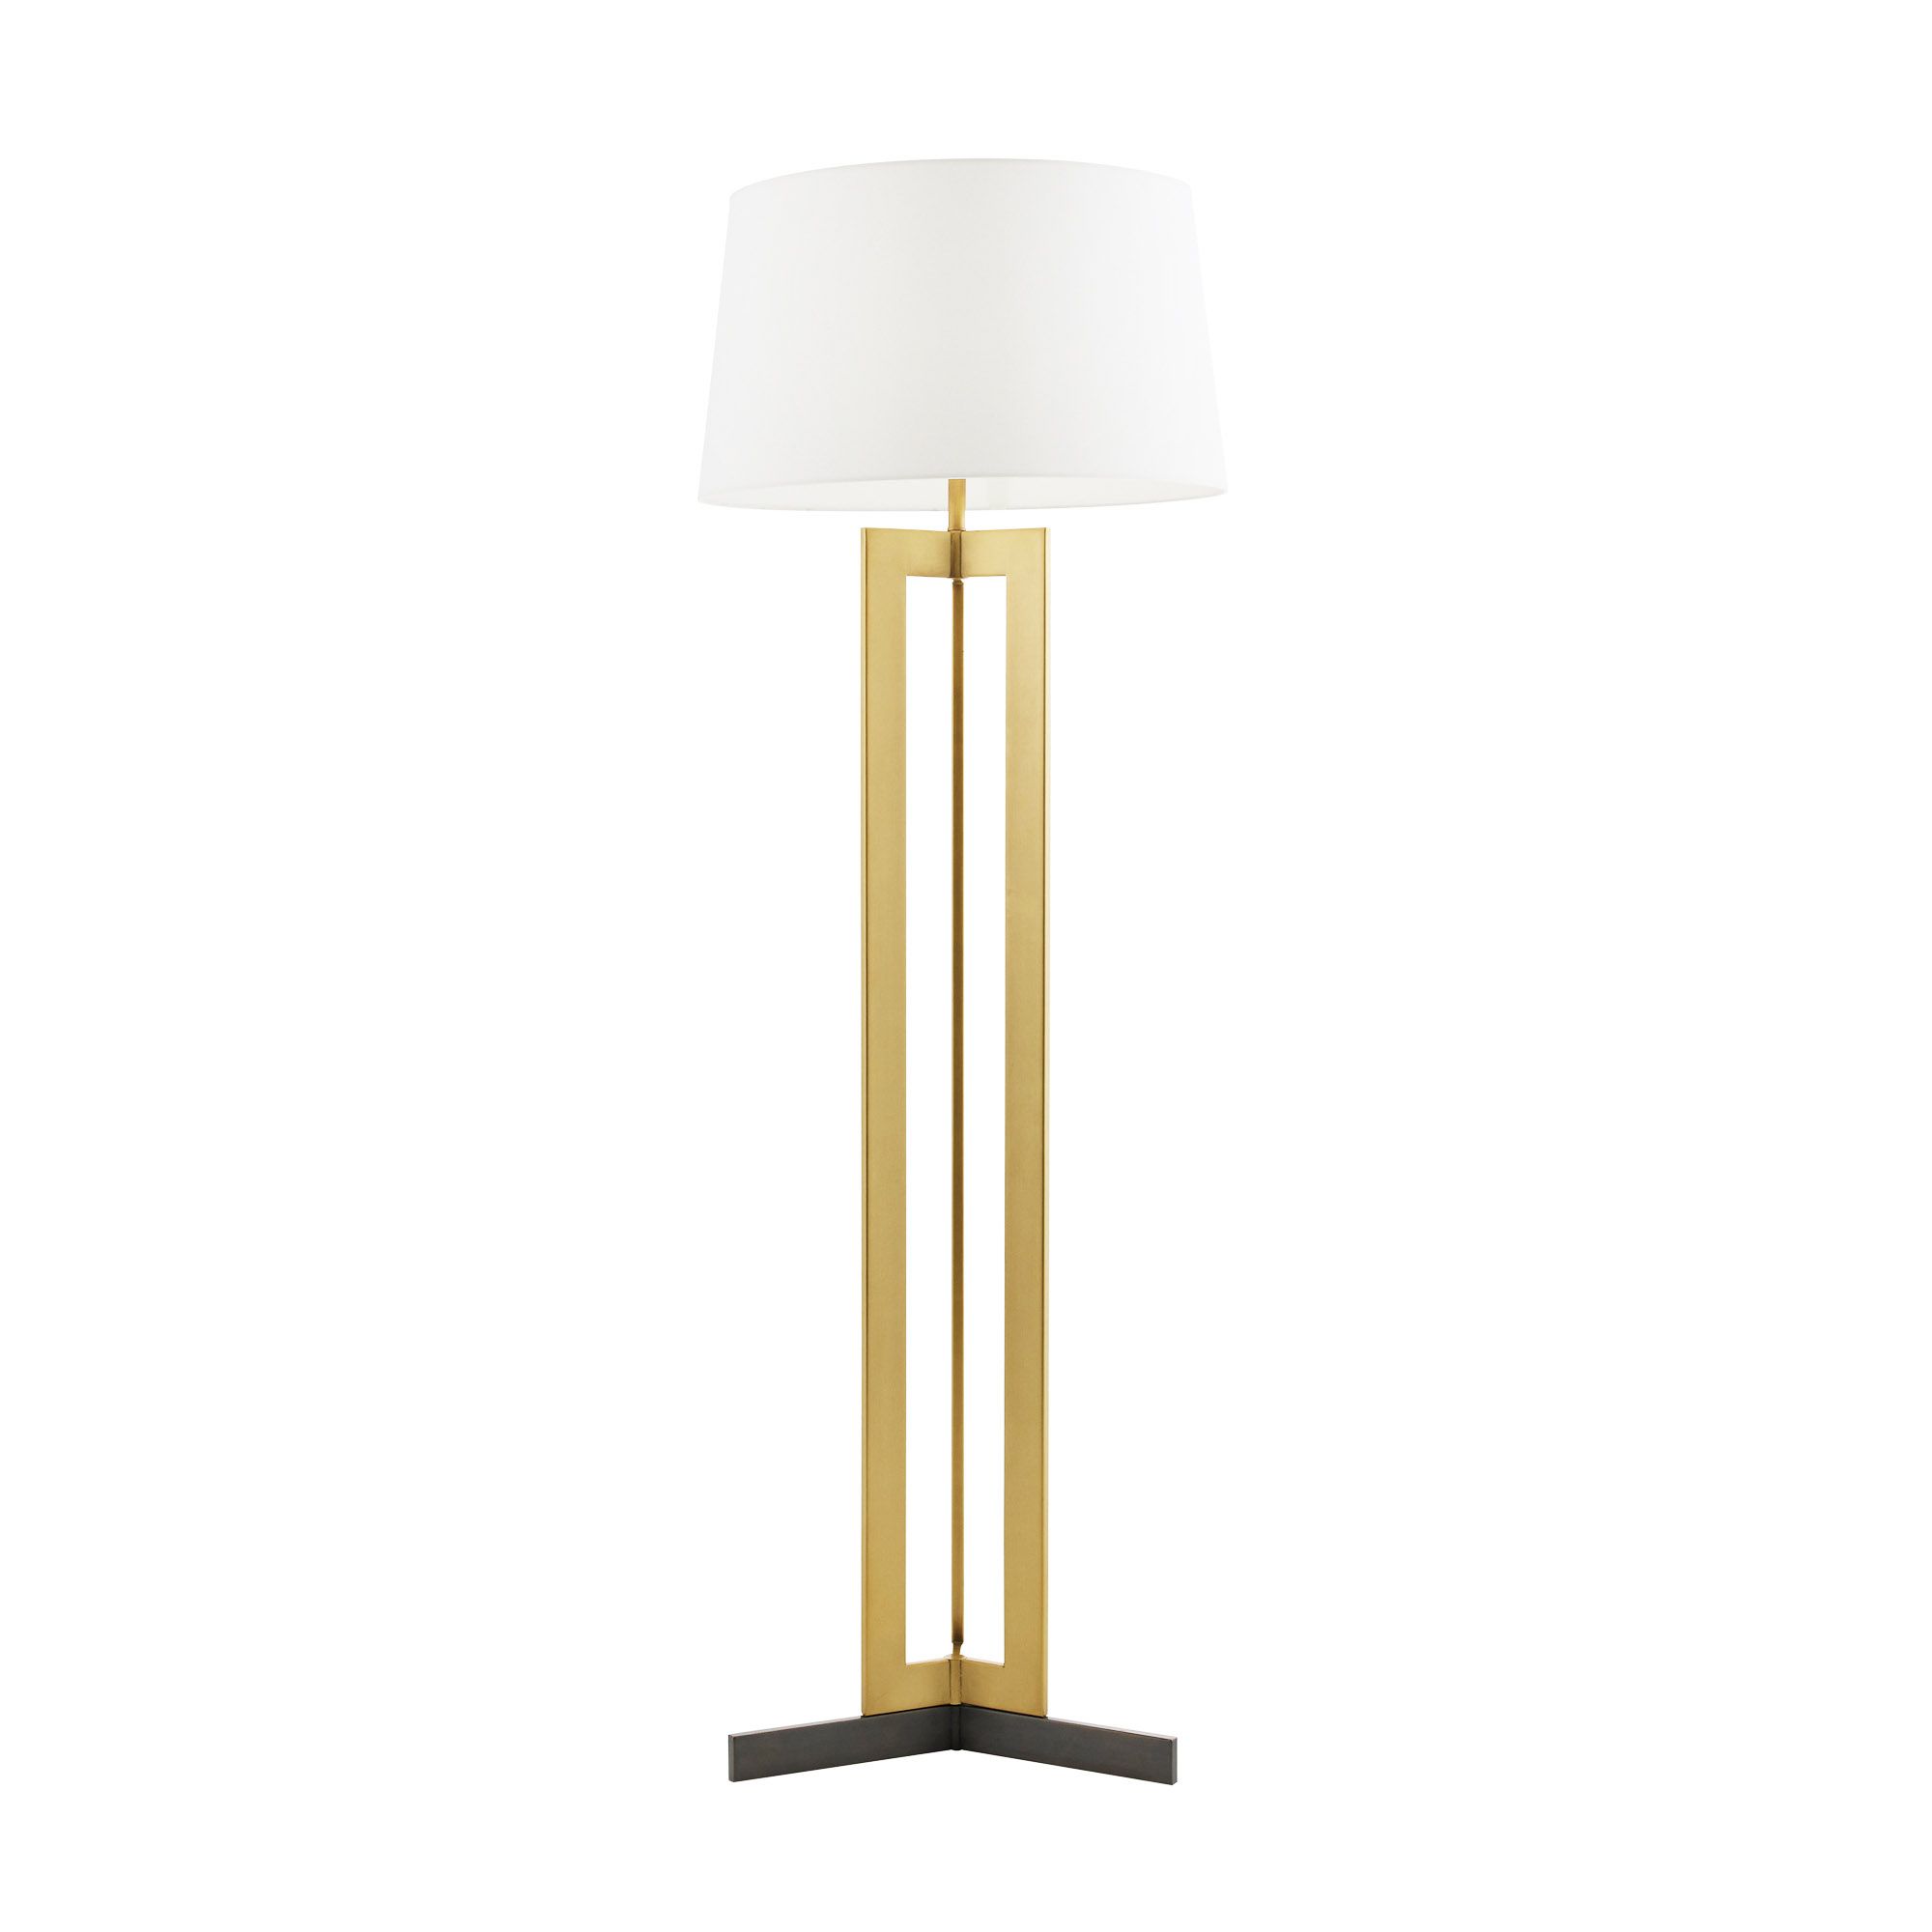 Купить Торшер Newman Floor Lamp в интернет-магазине roooms.ru